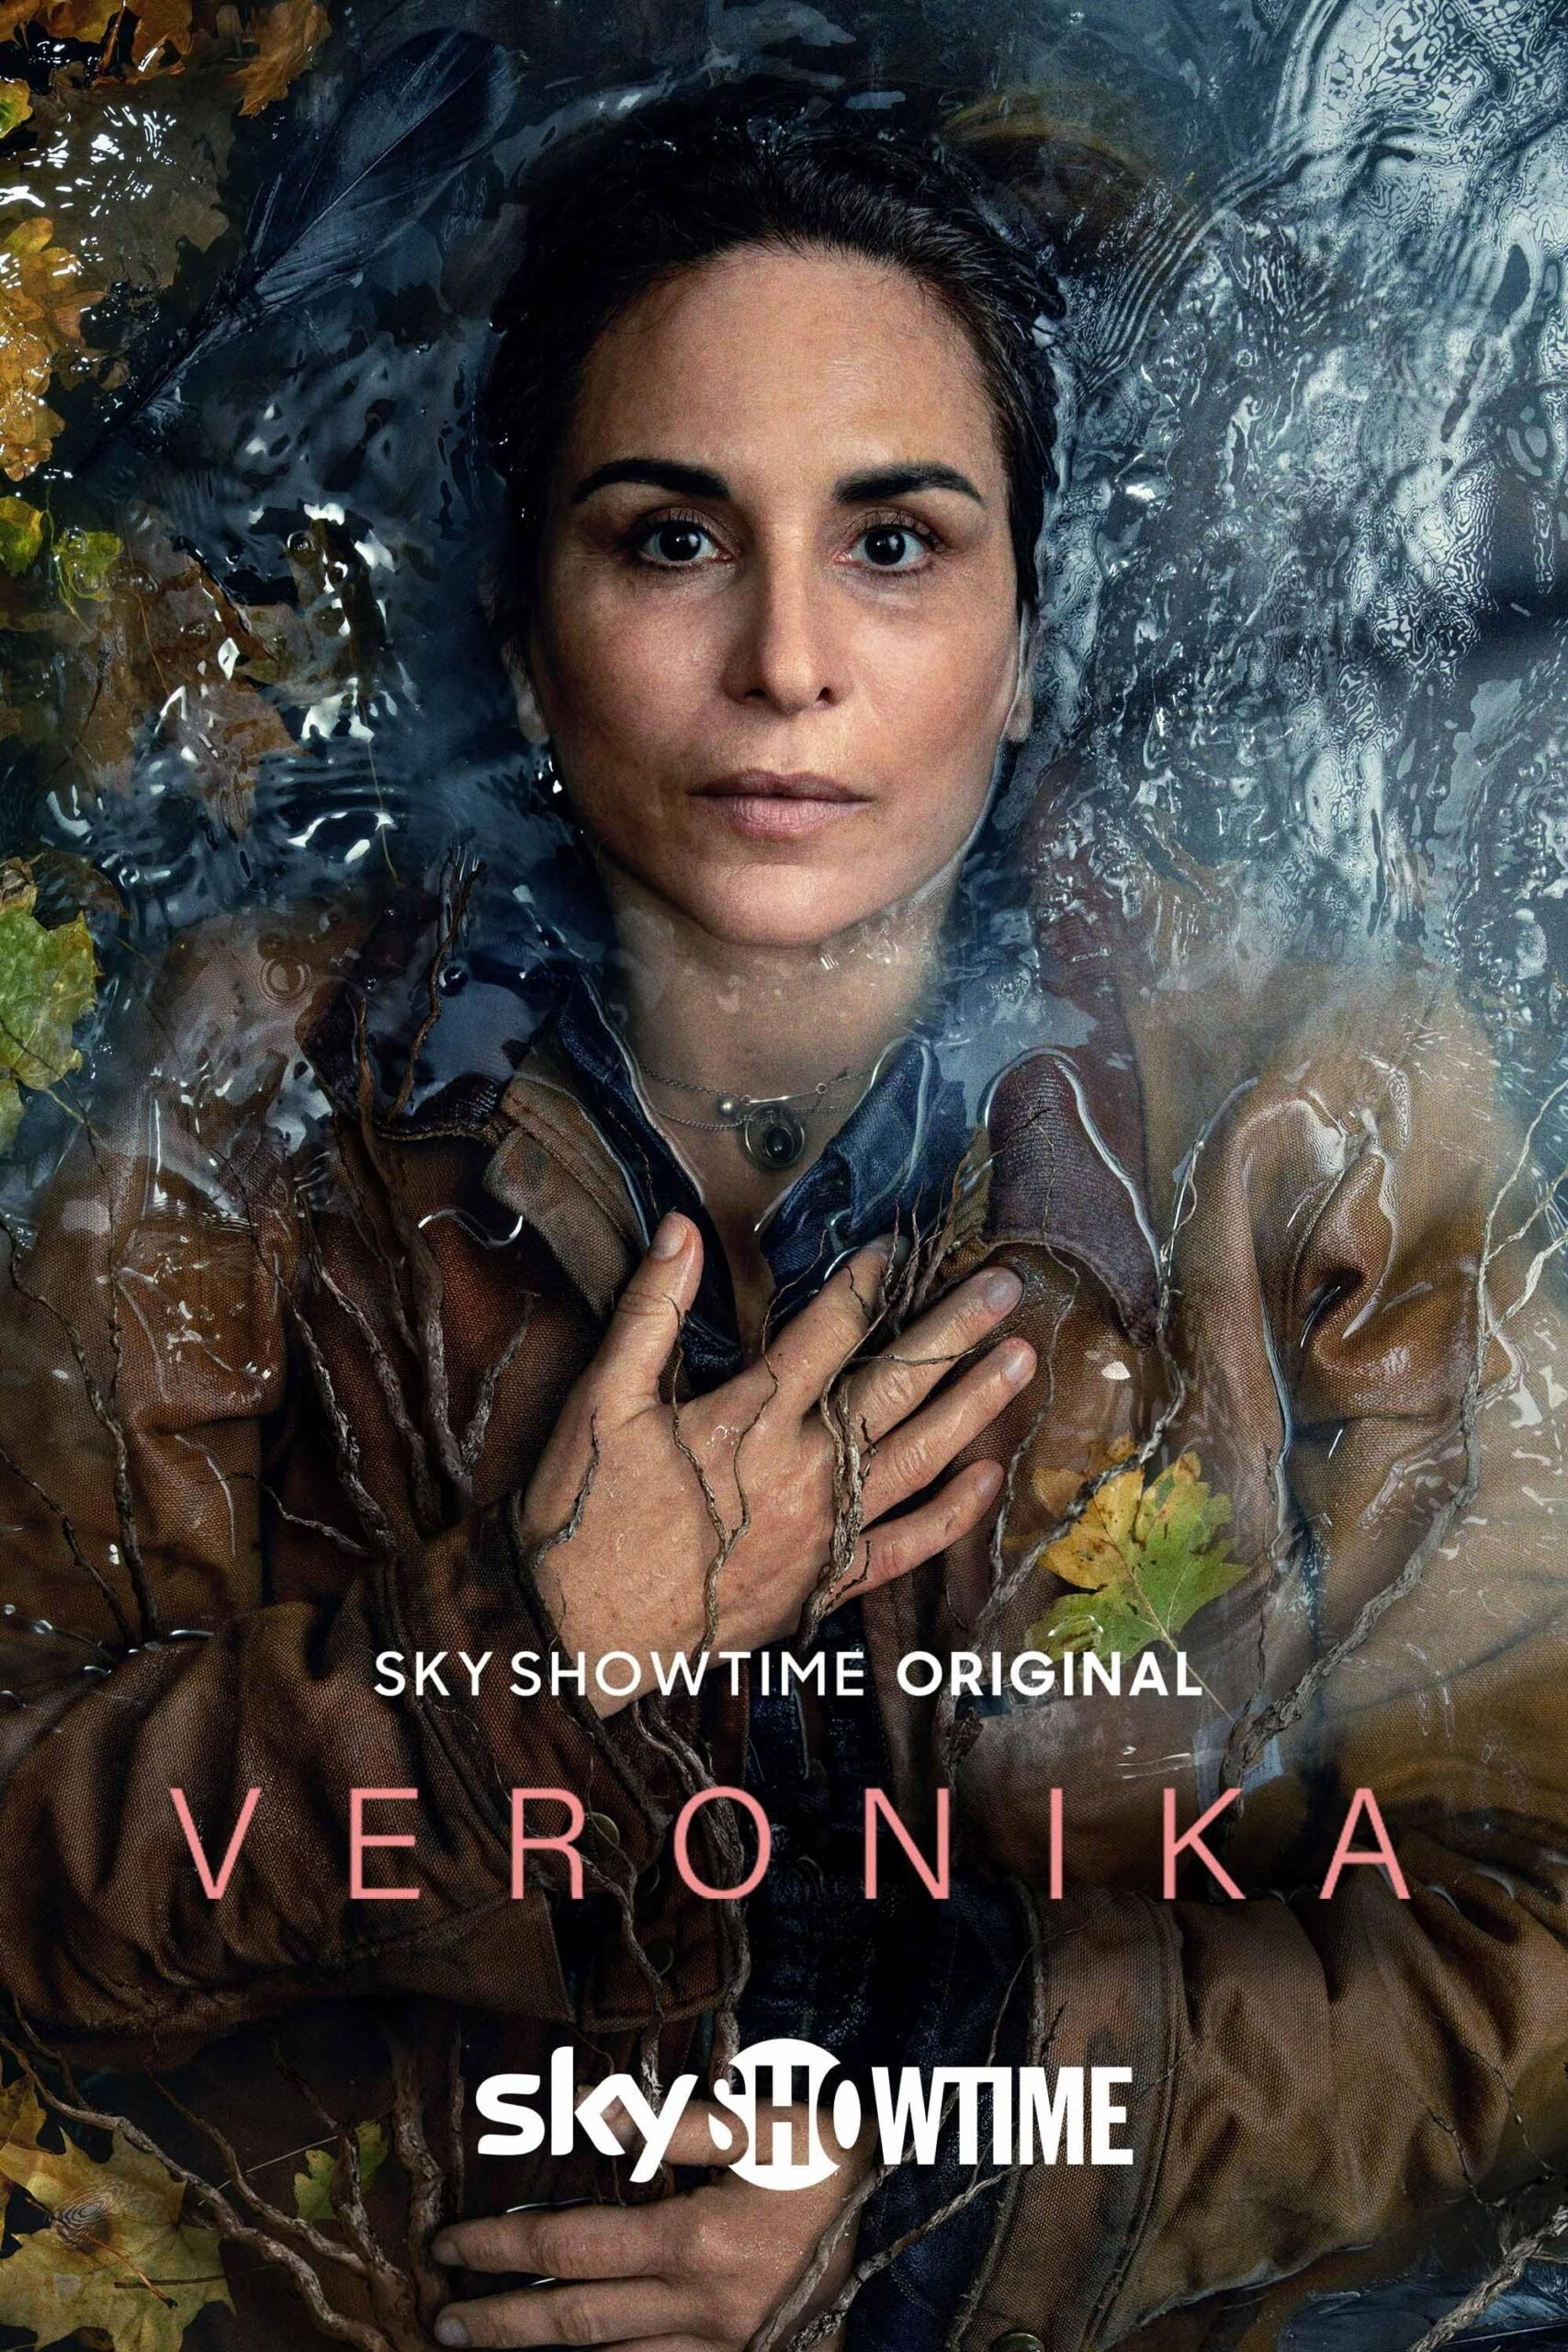 Plakát pro film “Veronika”